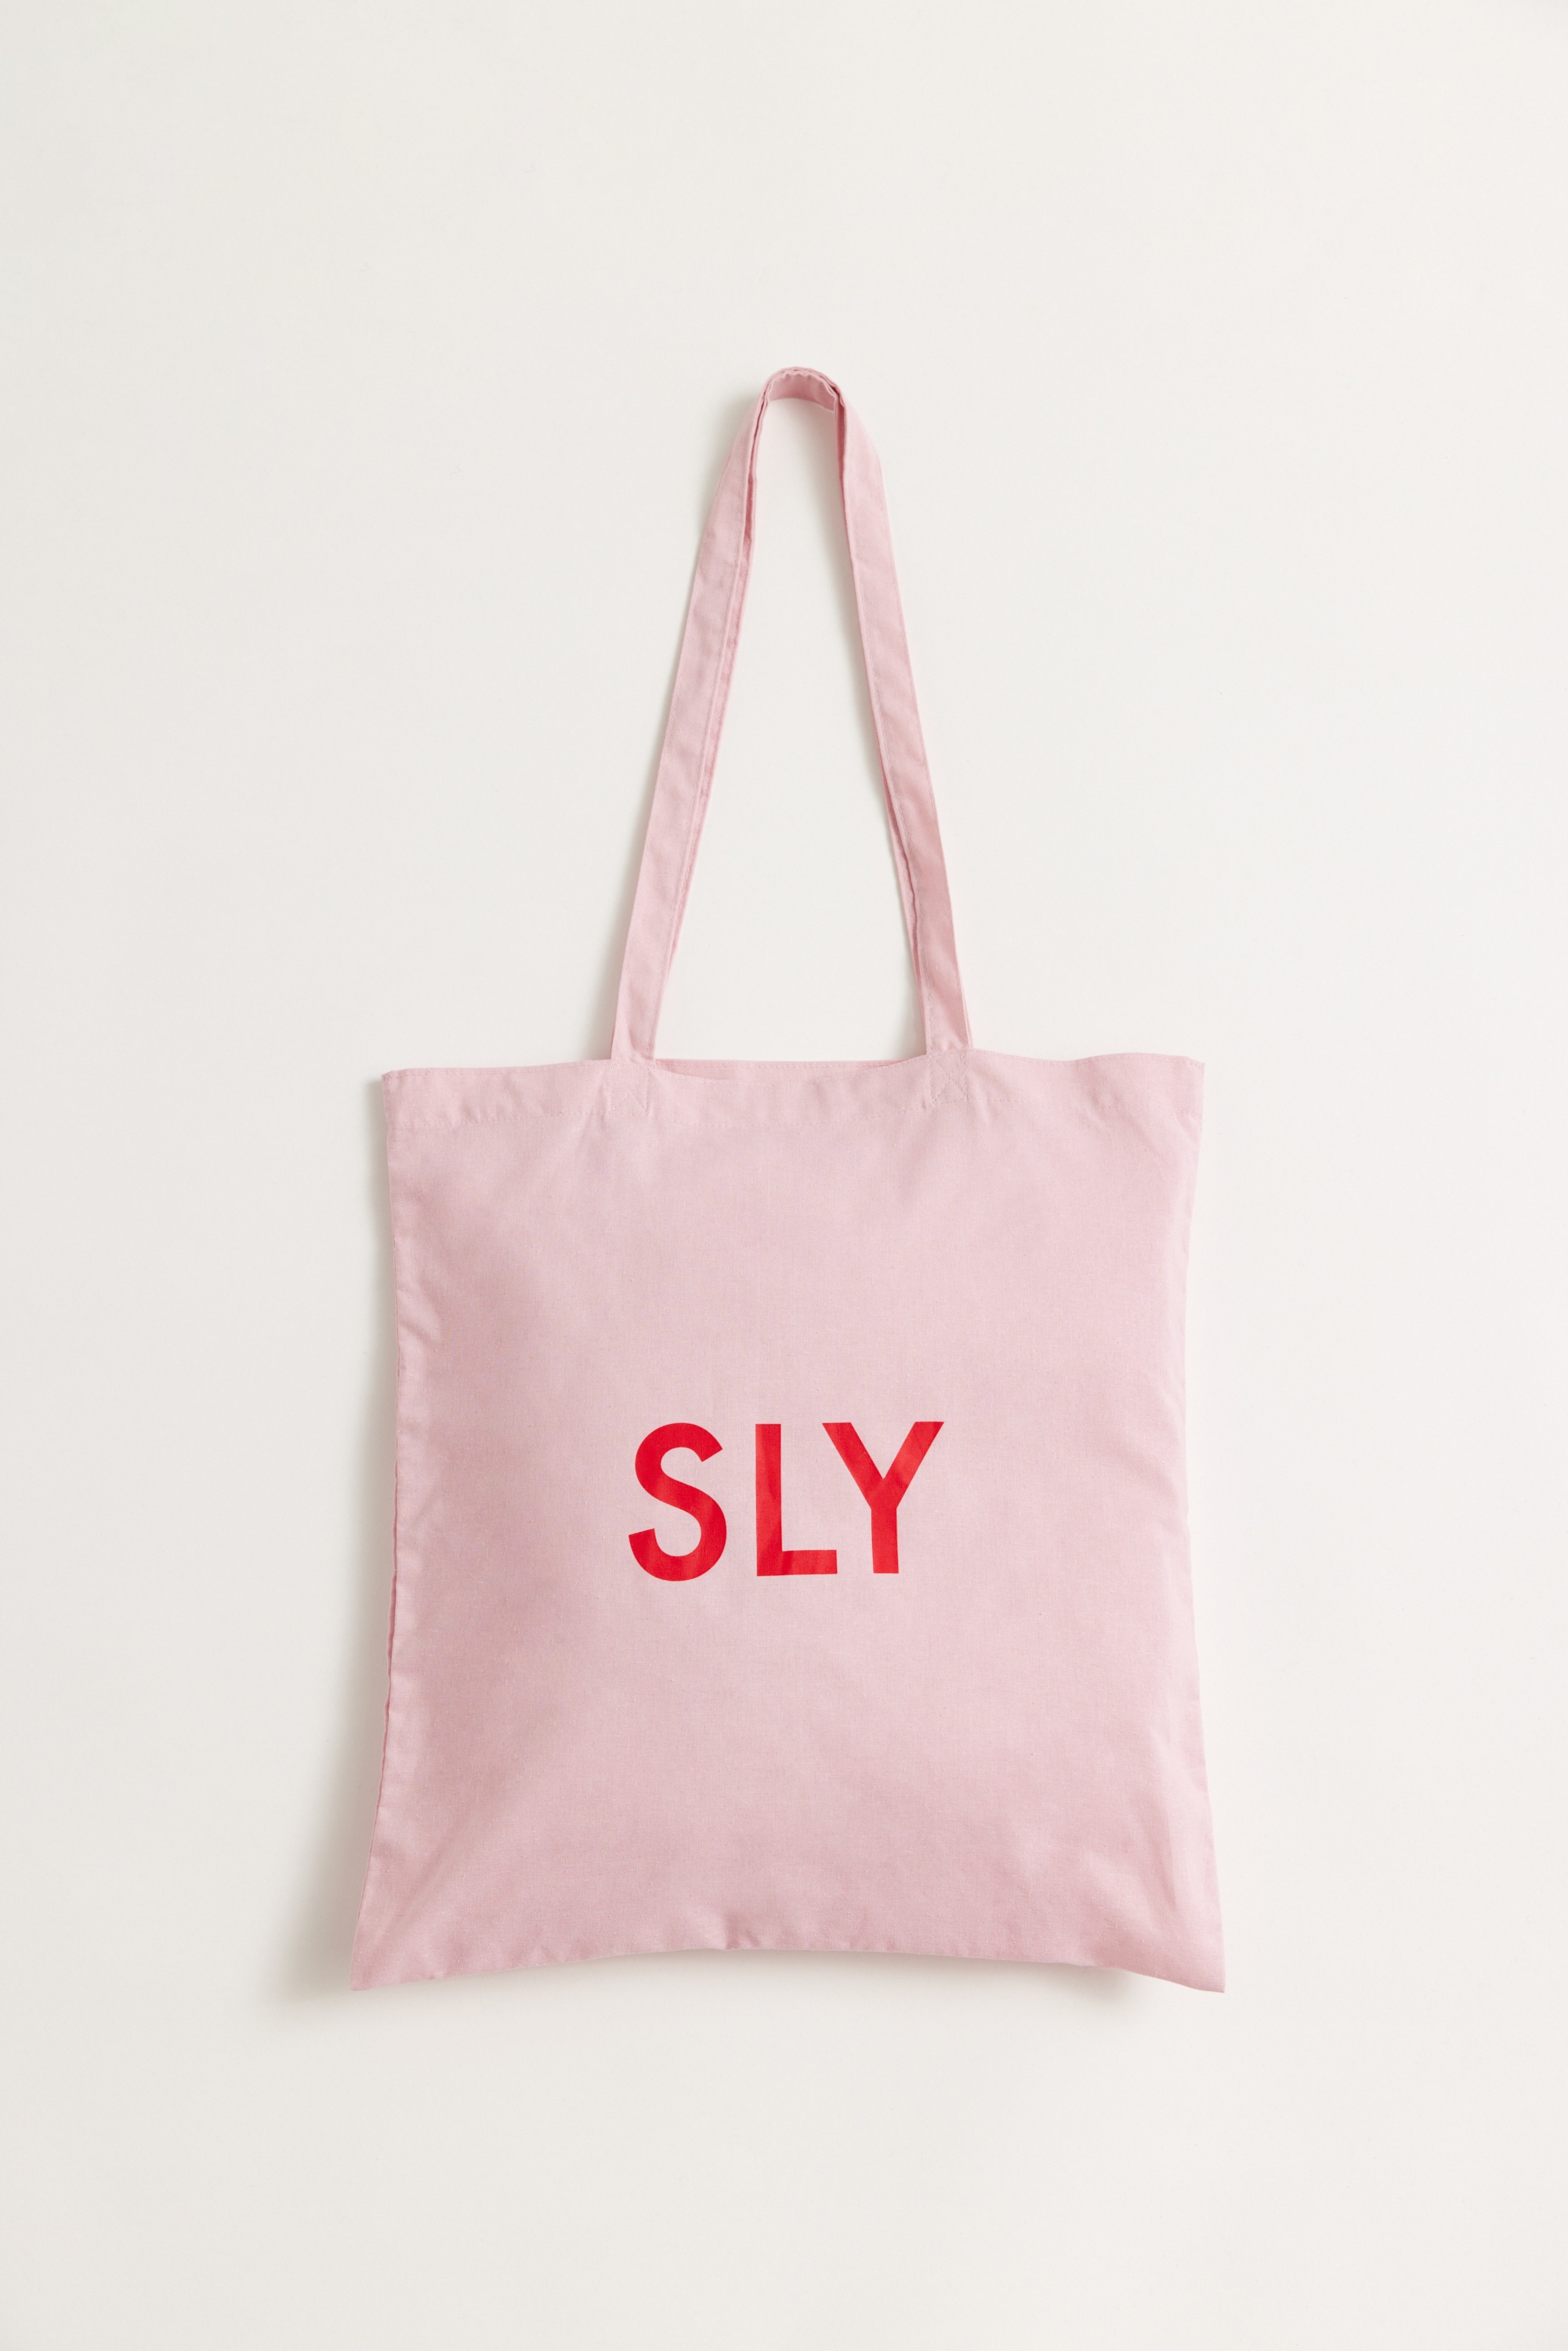 SLY | ノベ・SLY SHOPPER BAG (その他 ) |SHEL'TTER WEBSTORE